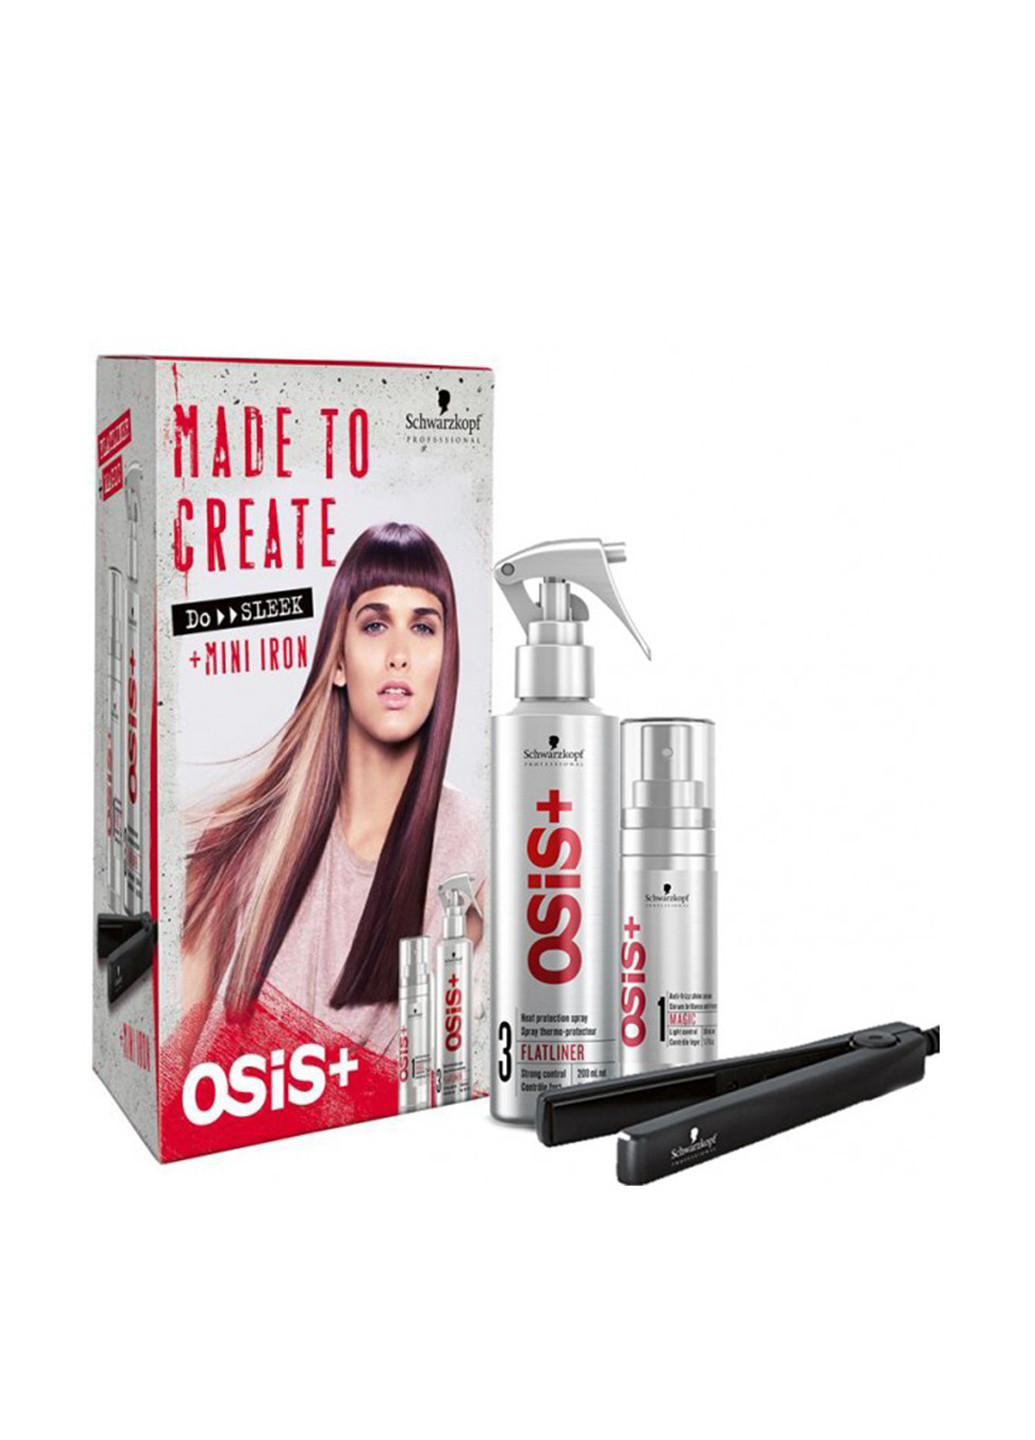 Набор для волос Osis+ (3 пр.) Schwarzkopf Professional (76059730)